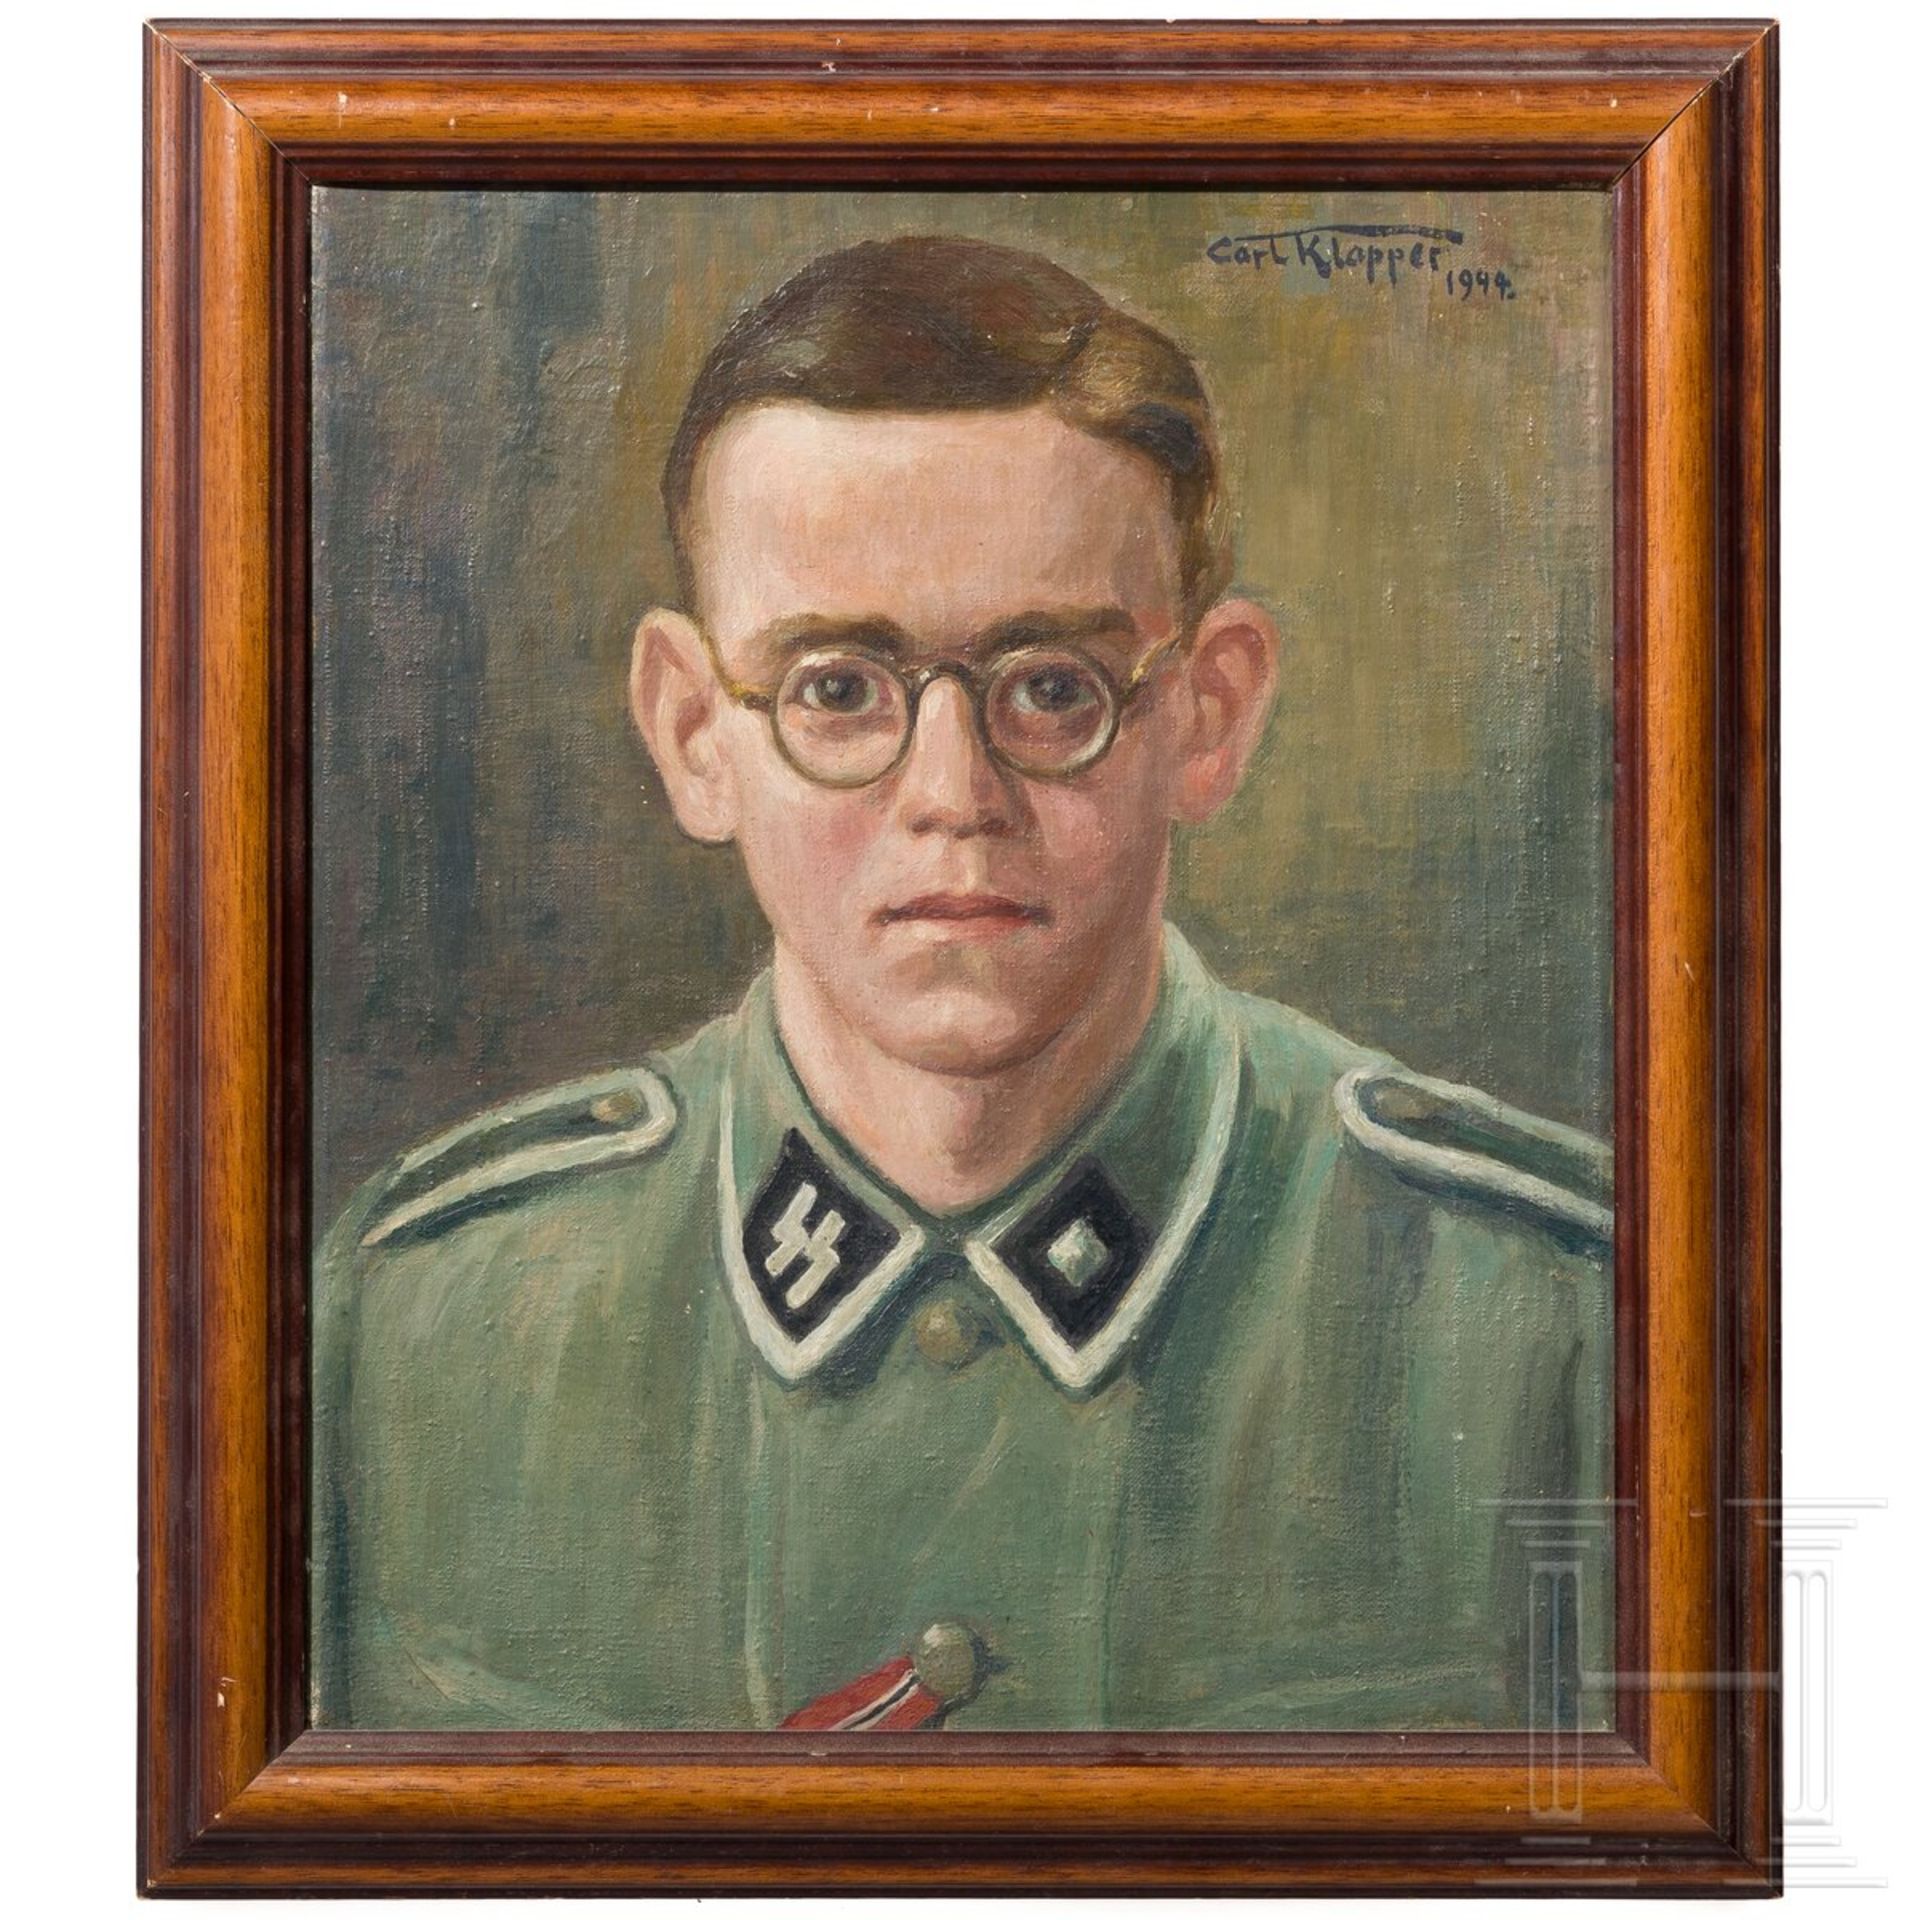 Portrait eines Unterscharführers der Waffen-SS